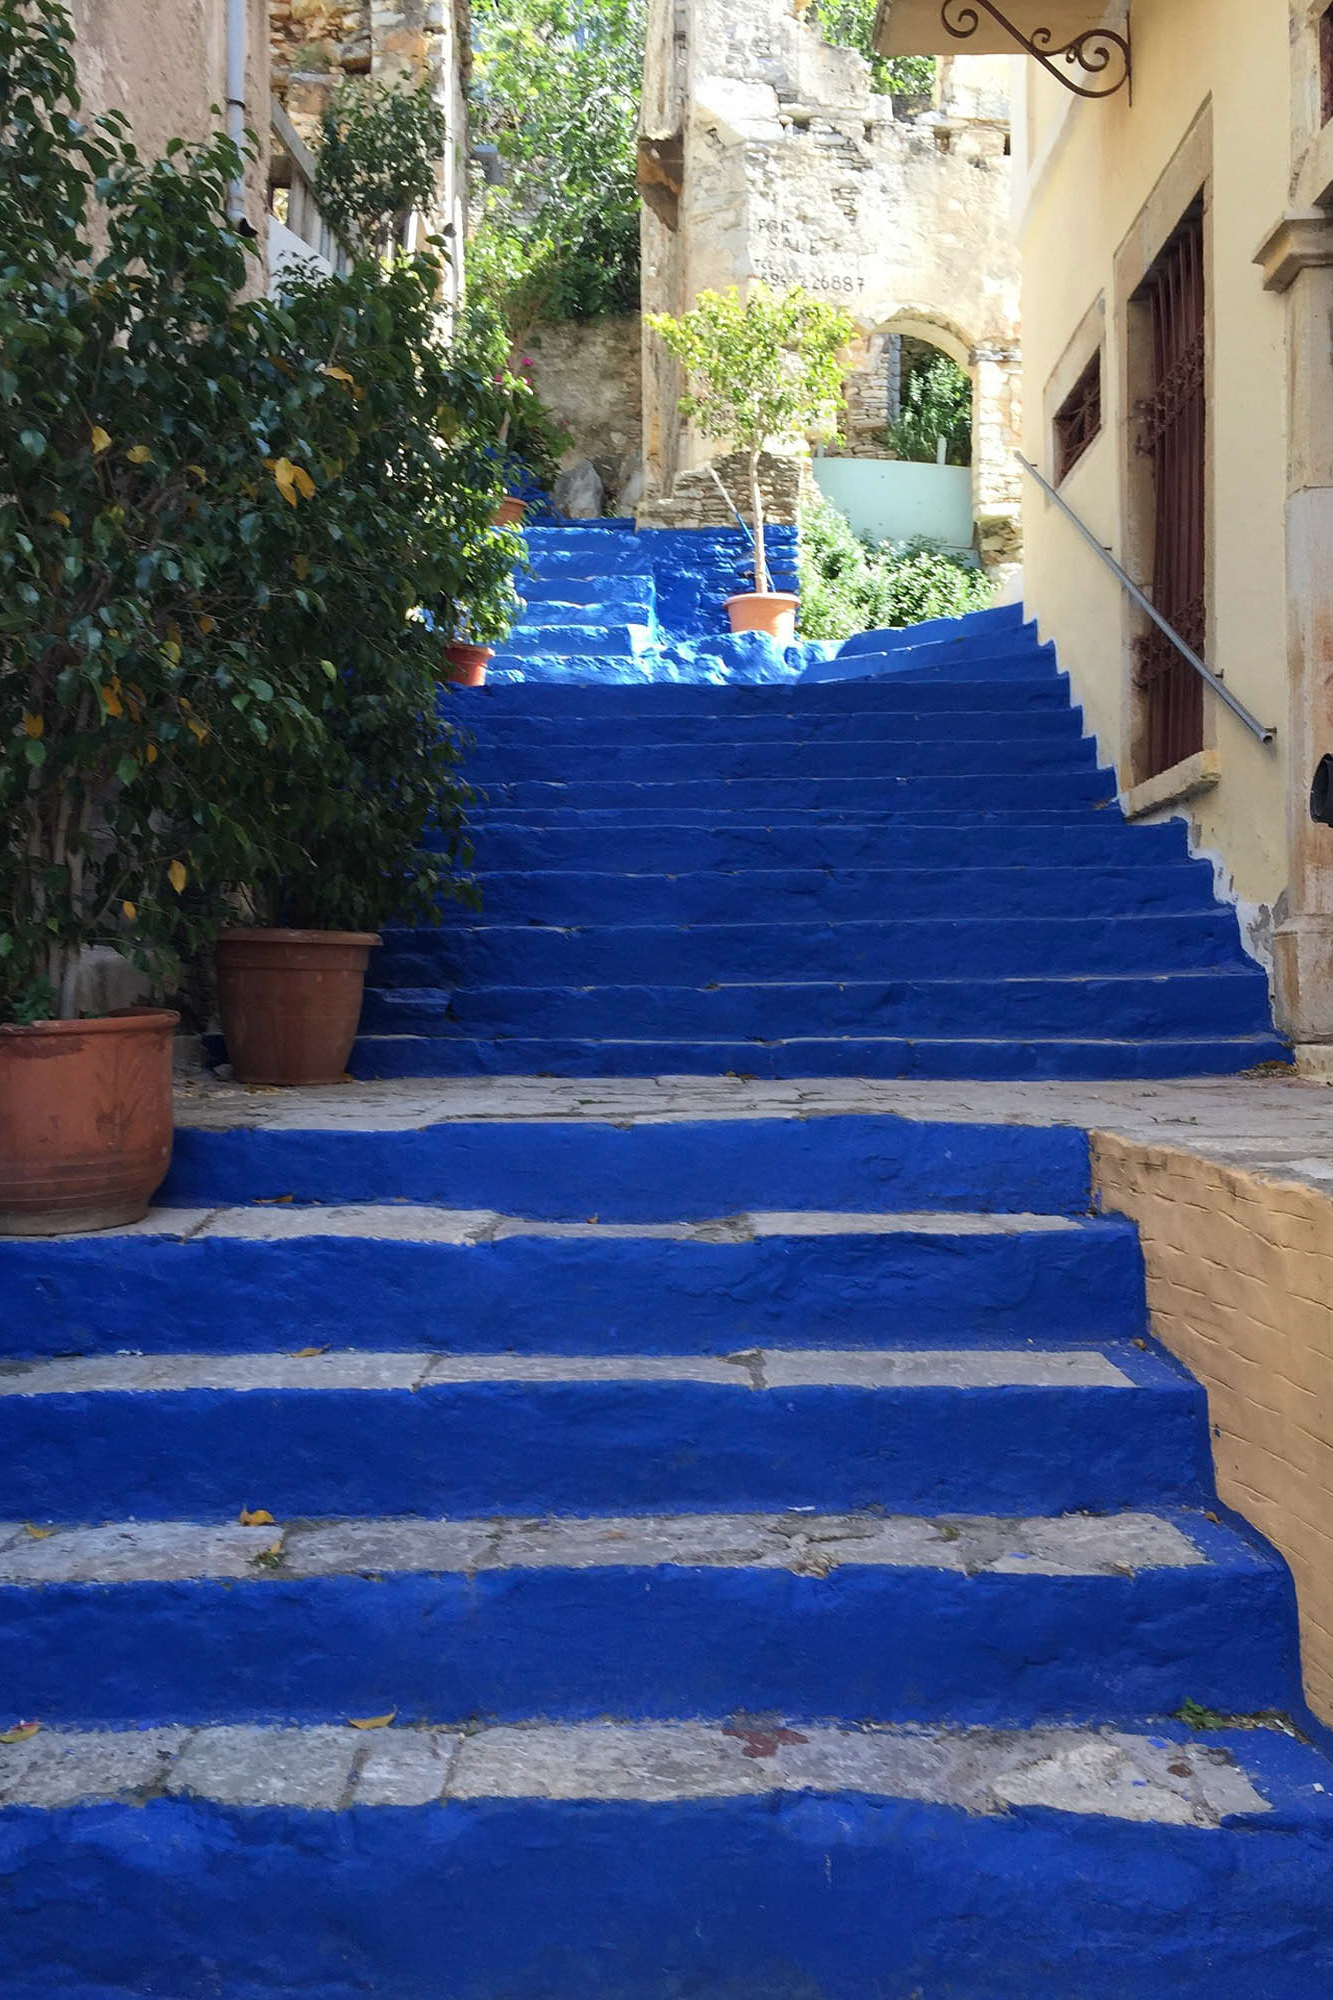 niebieskie schody na wyspie symi, niesamowita architektura, detal